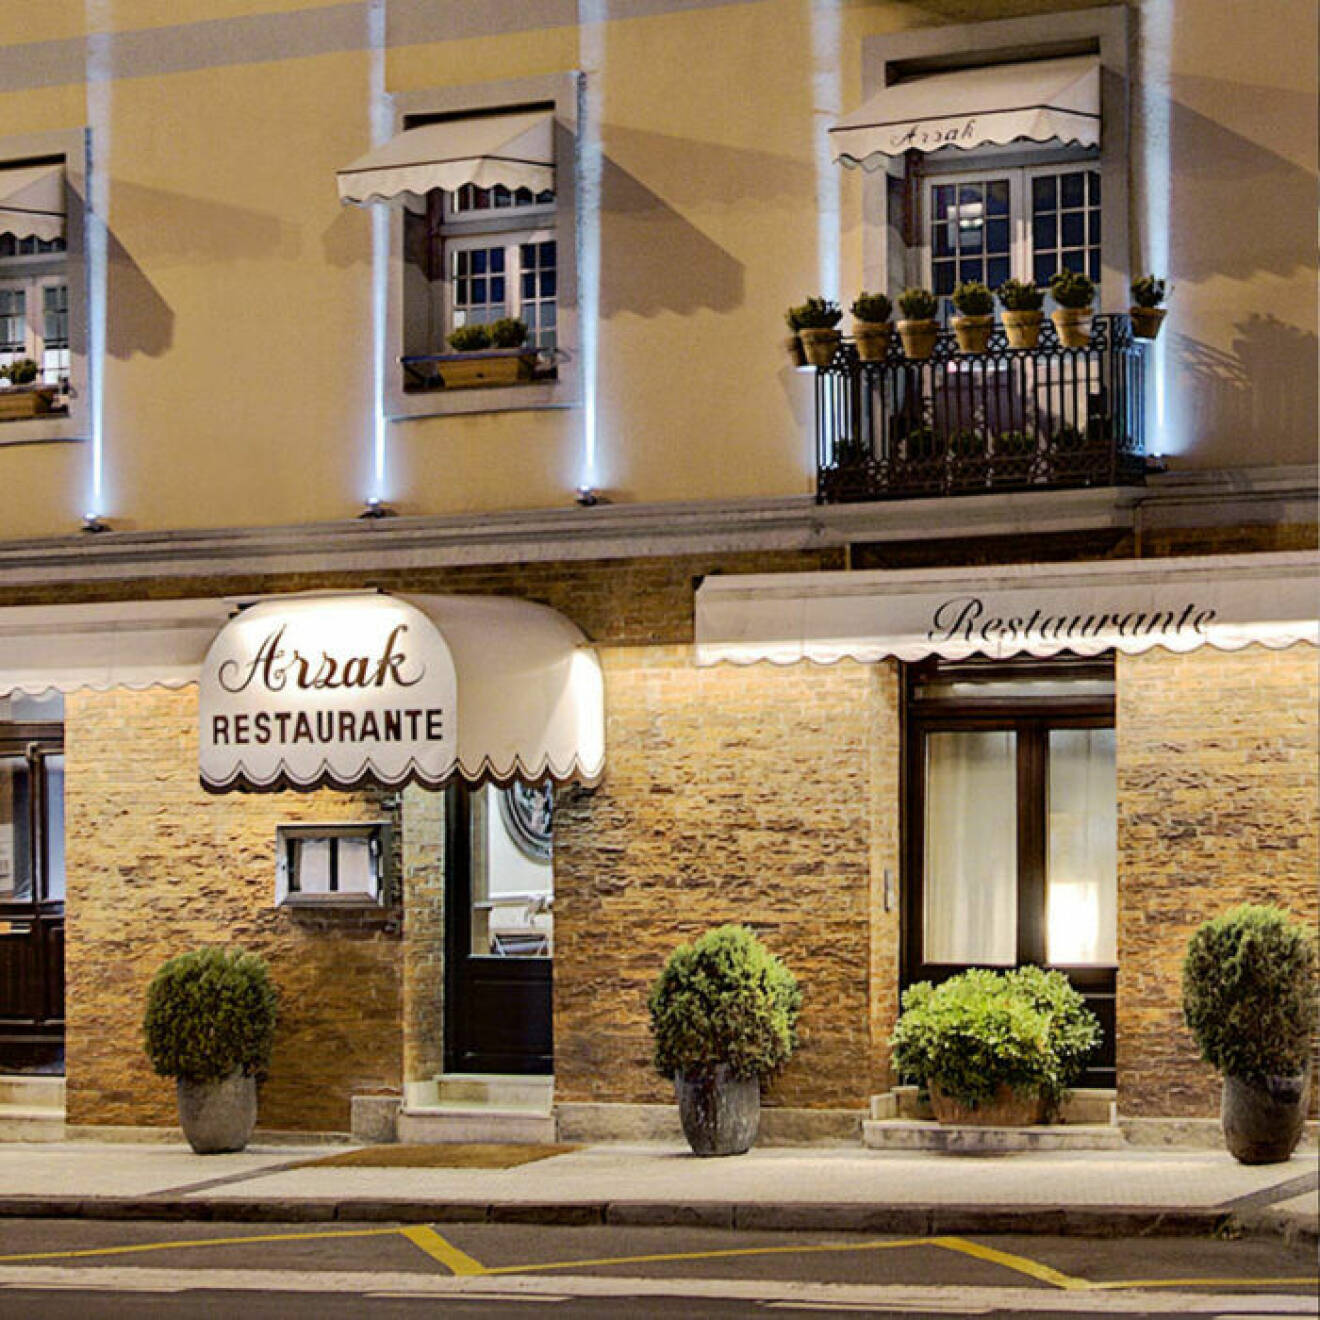 Azrak är en av världens bästa restauranger.